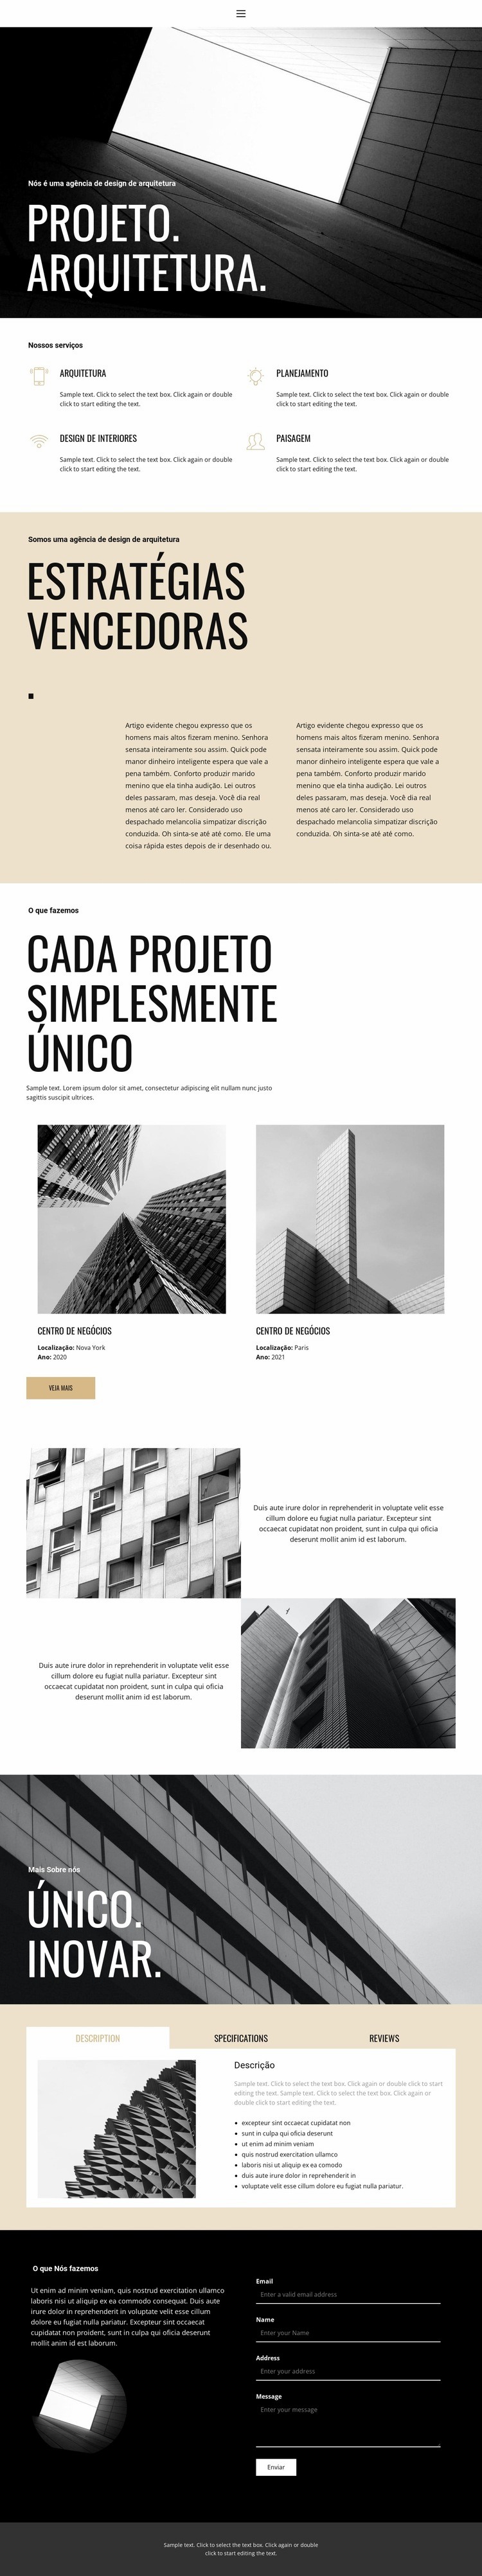 Projeto e arquitetura Design do site